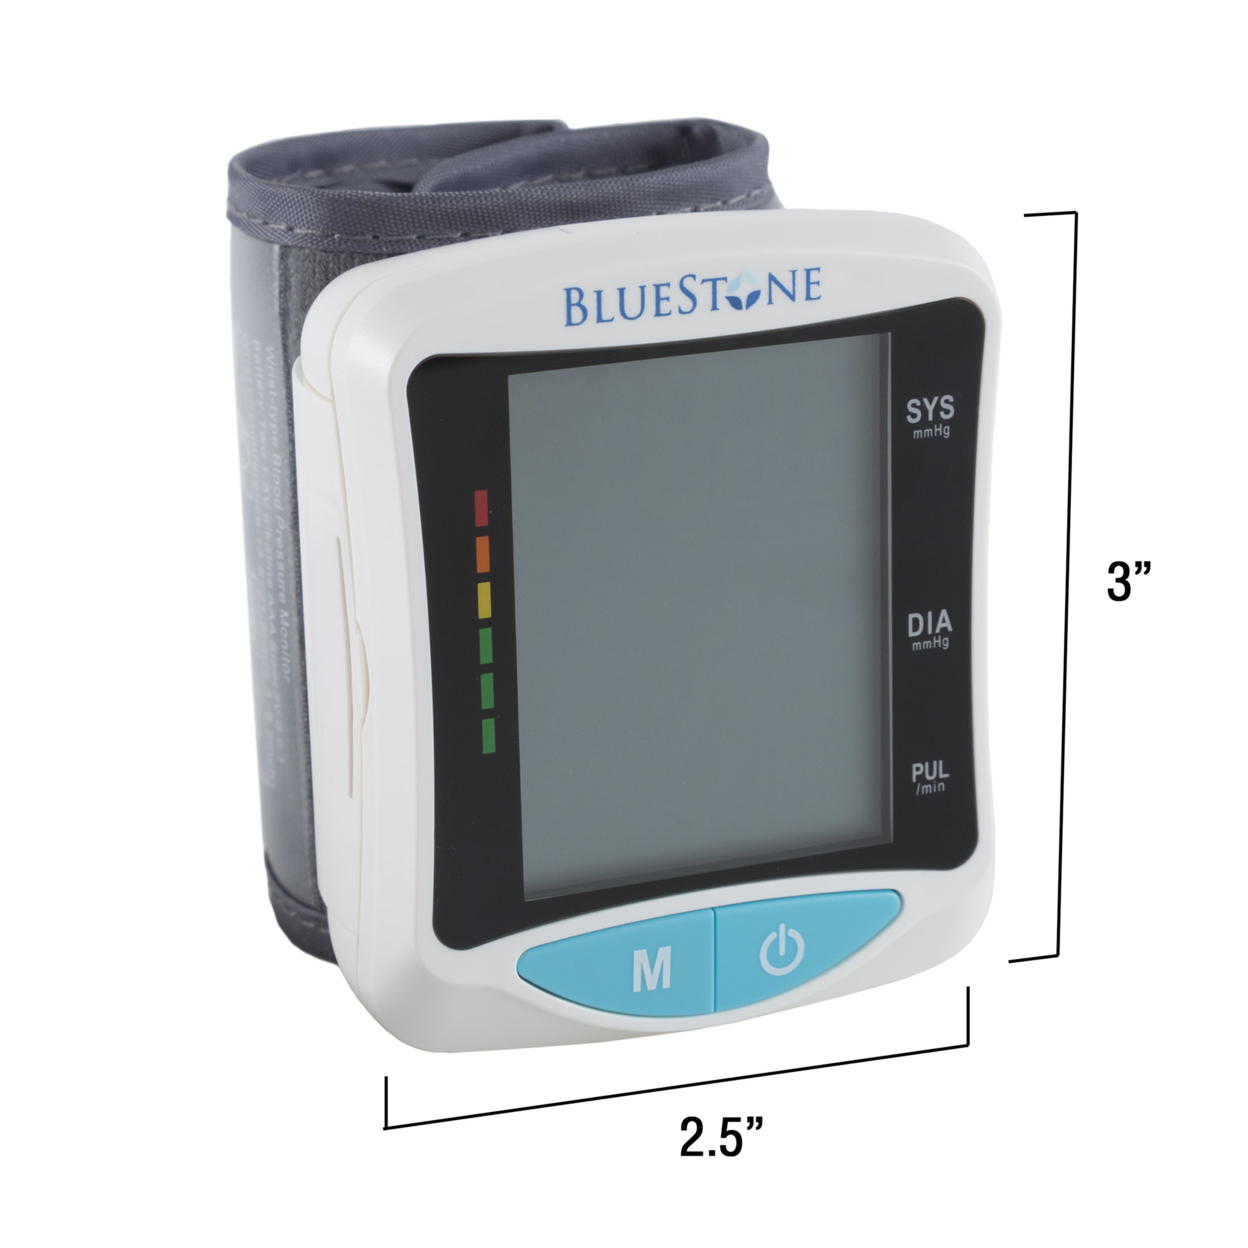 Bluestone Automatic Wrist Blood Pressure And Pulse Monitor 4 Person Memory